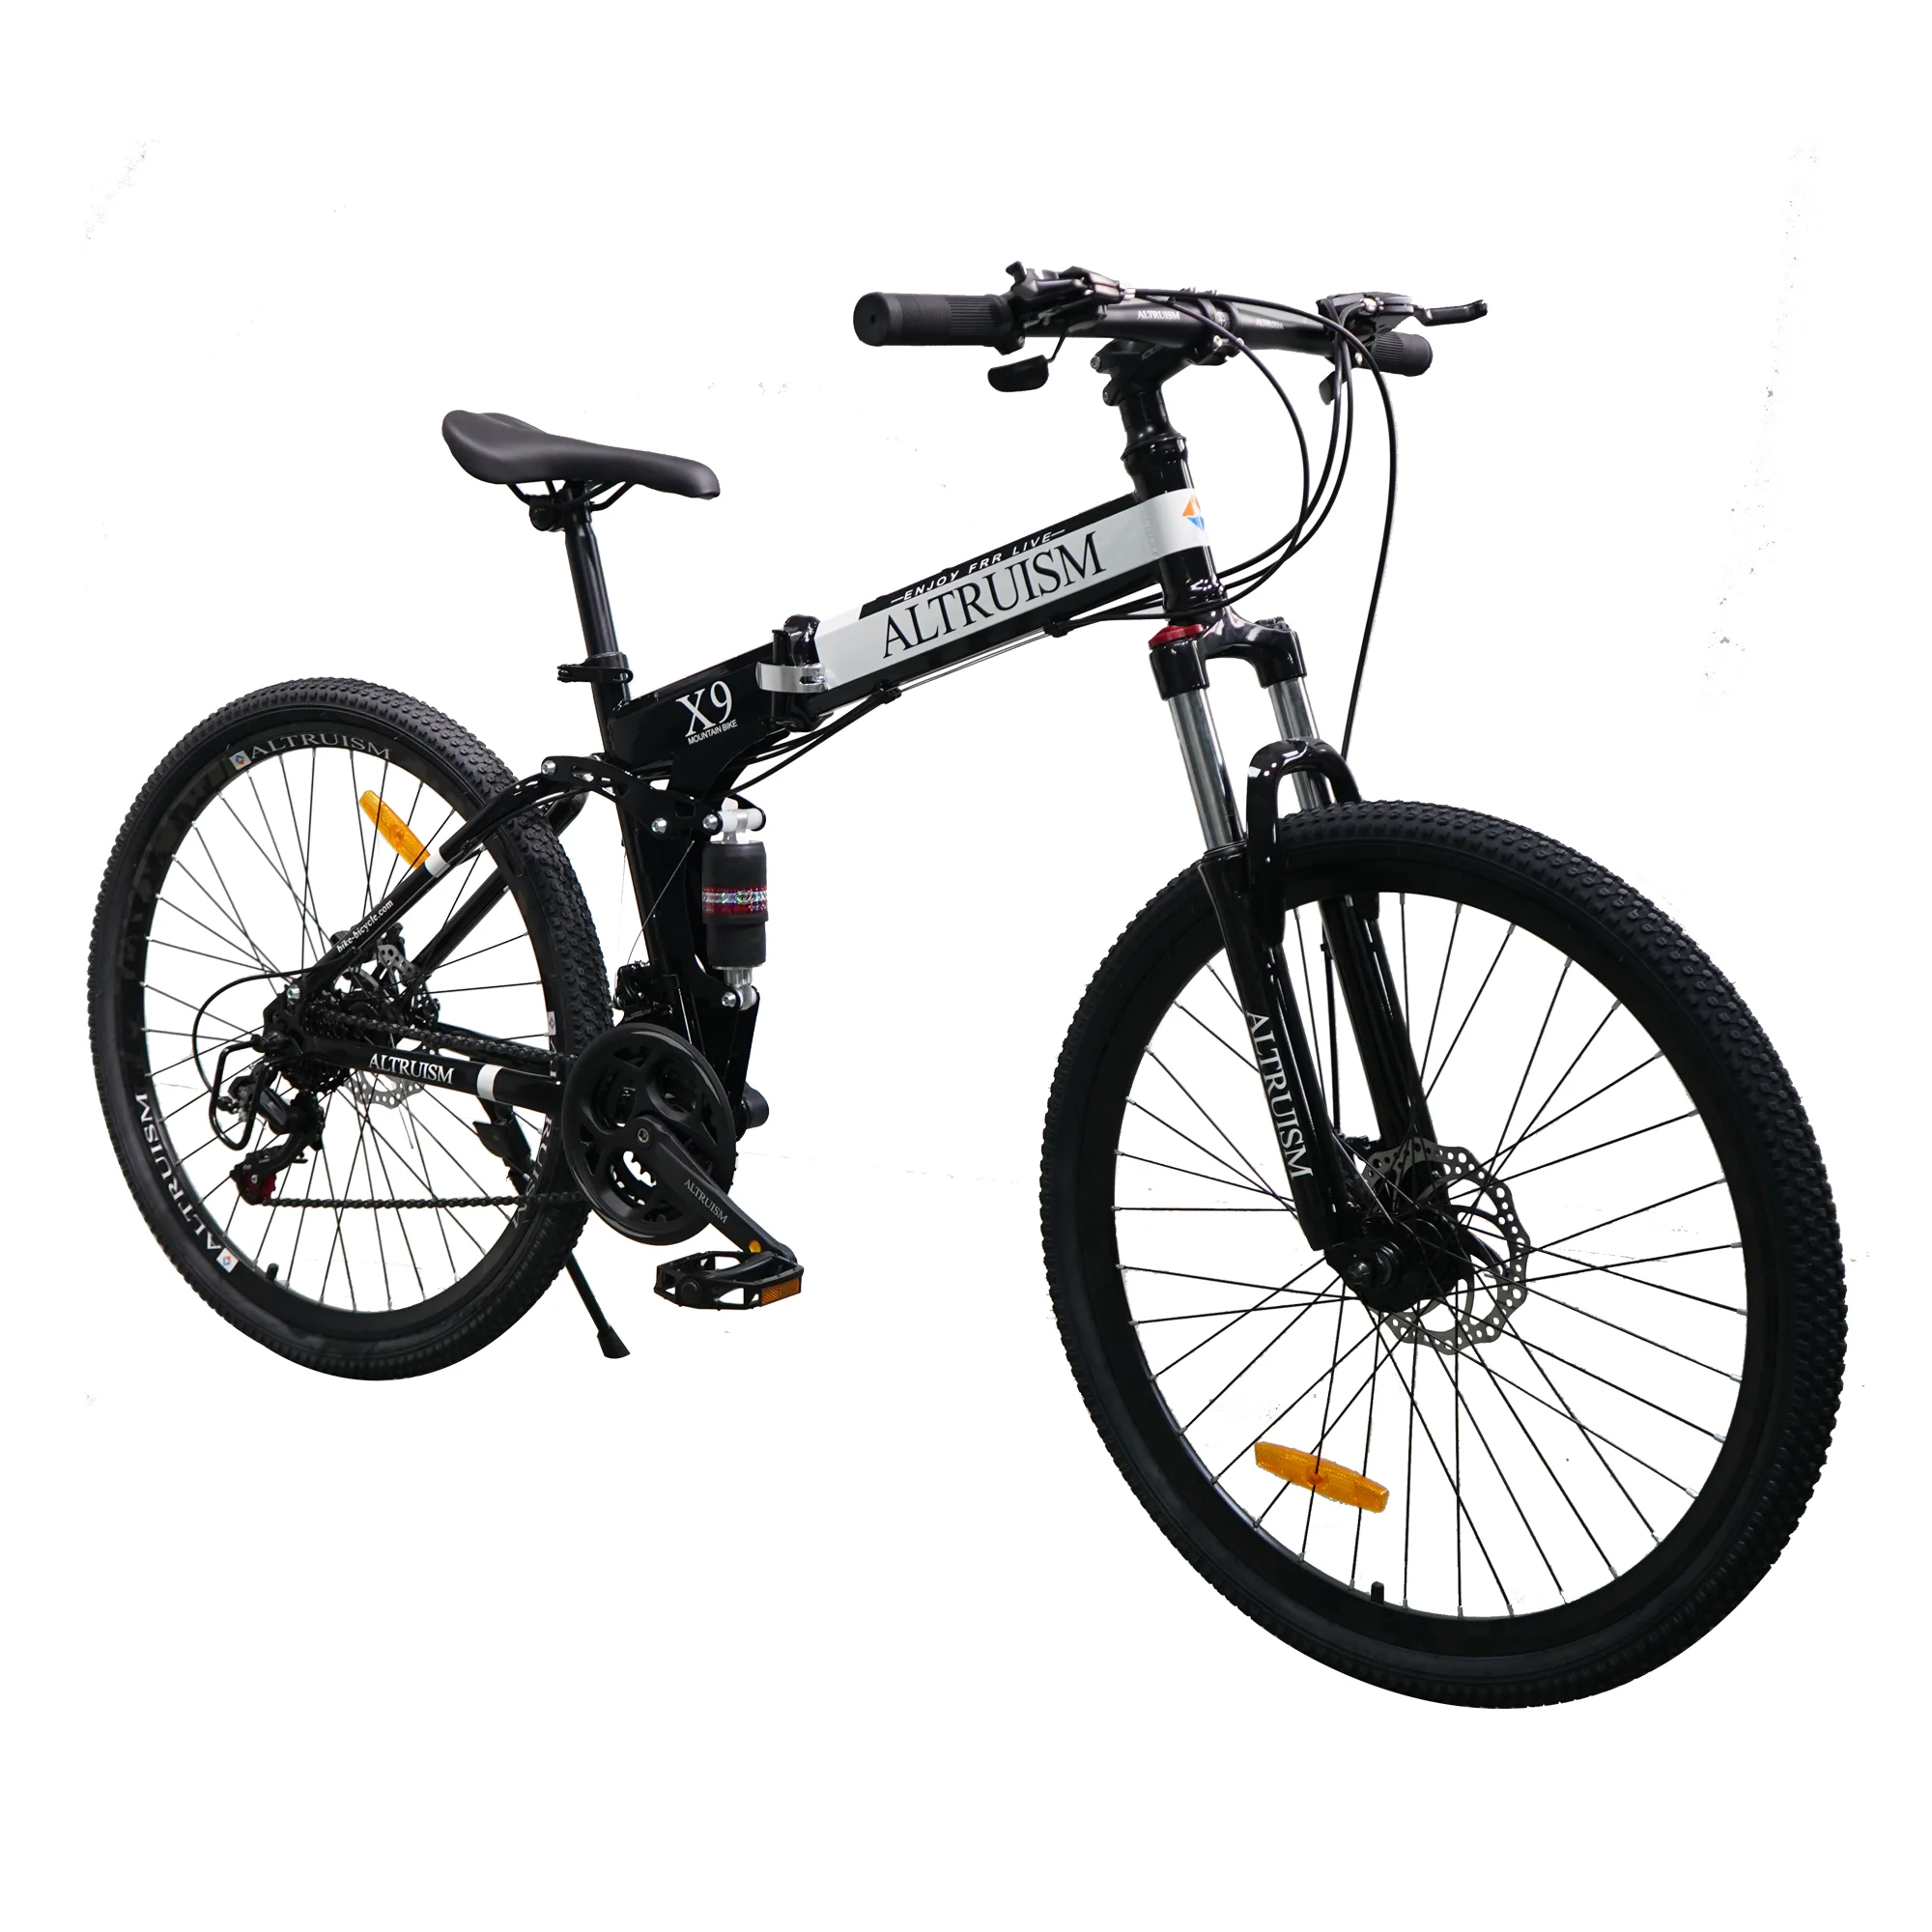 Горный велосипед ALTRUISM X9 21 скорость 26 дюймов стальная рама |